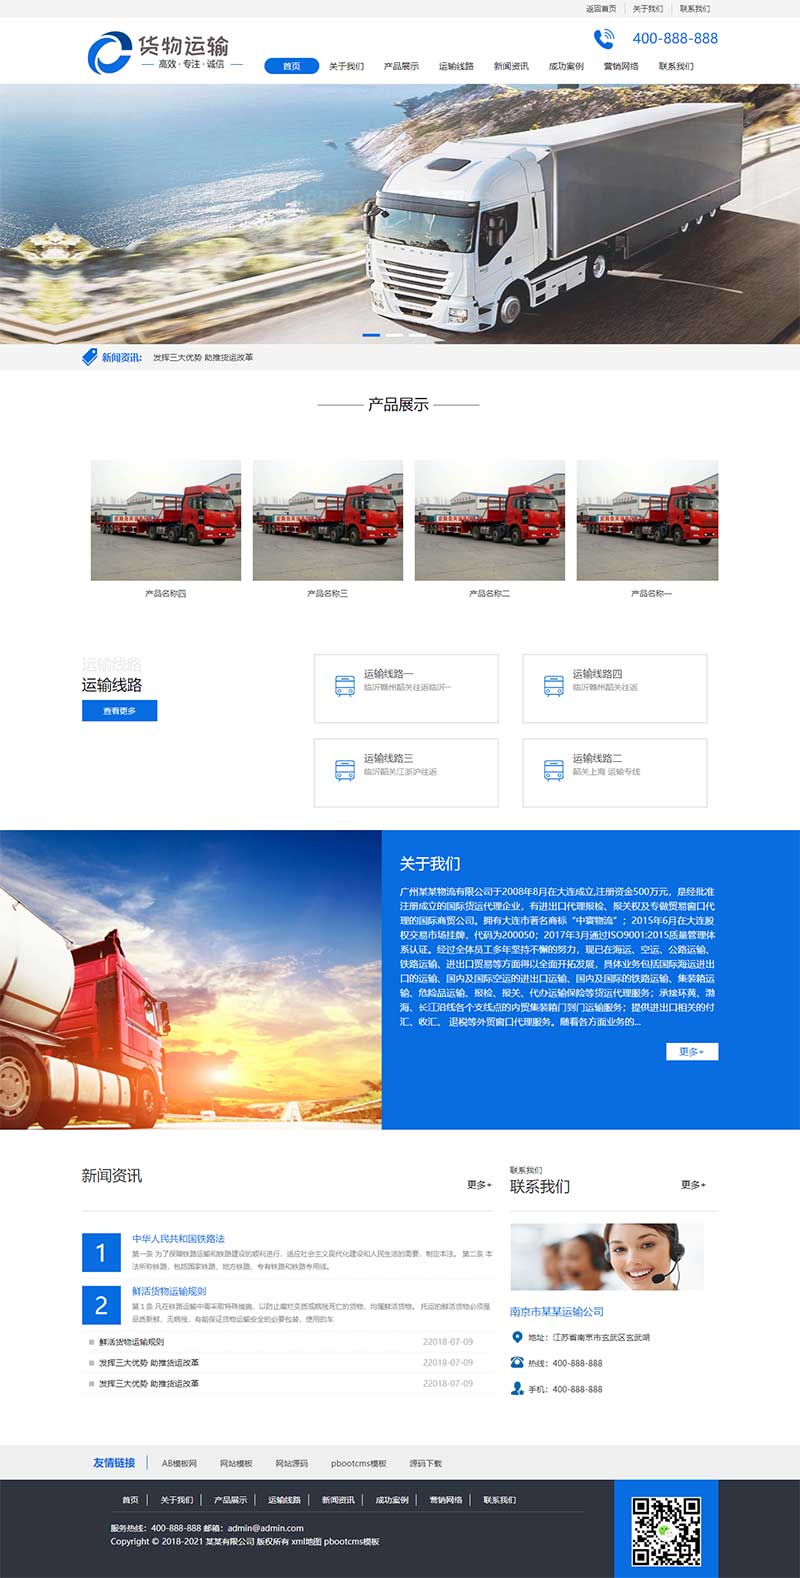 货物运输快递物流网站模板 汽车贸易网站源码下载